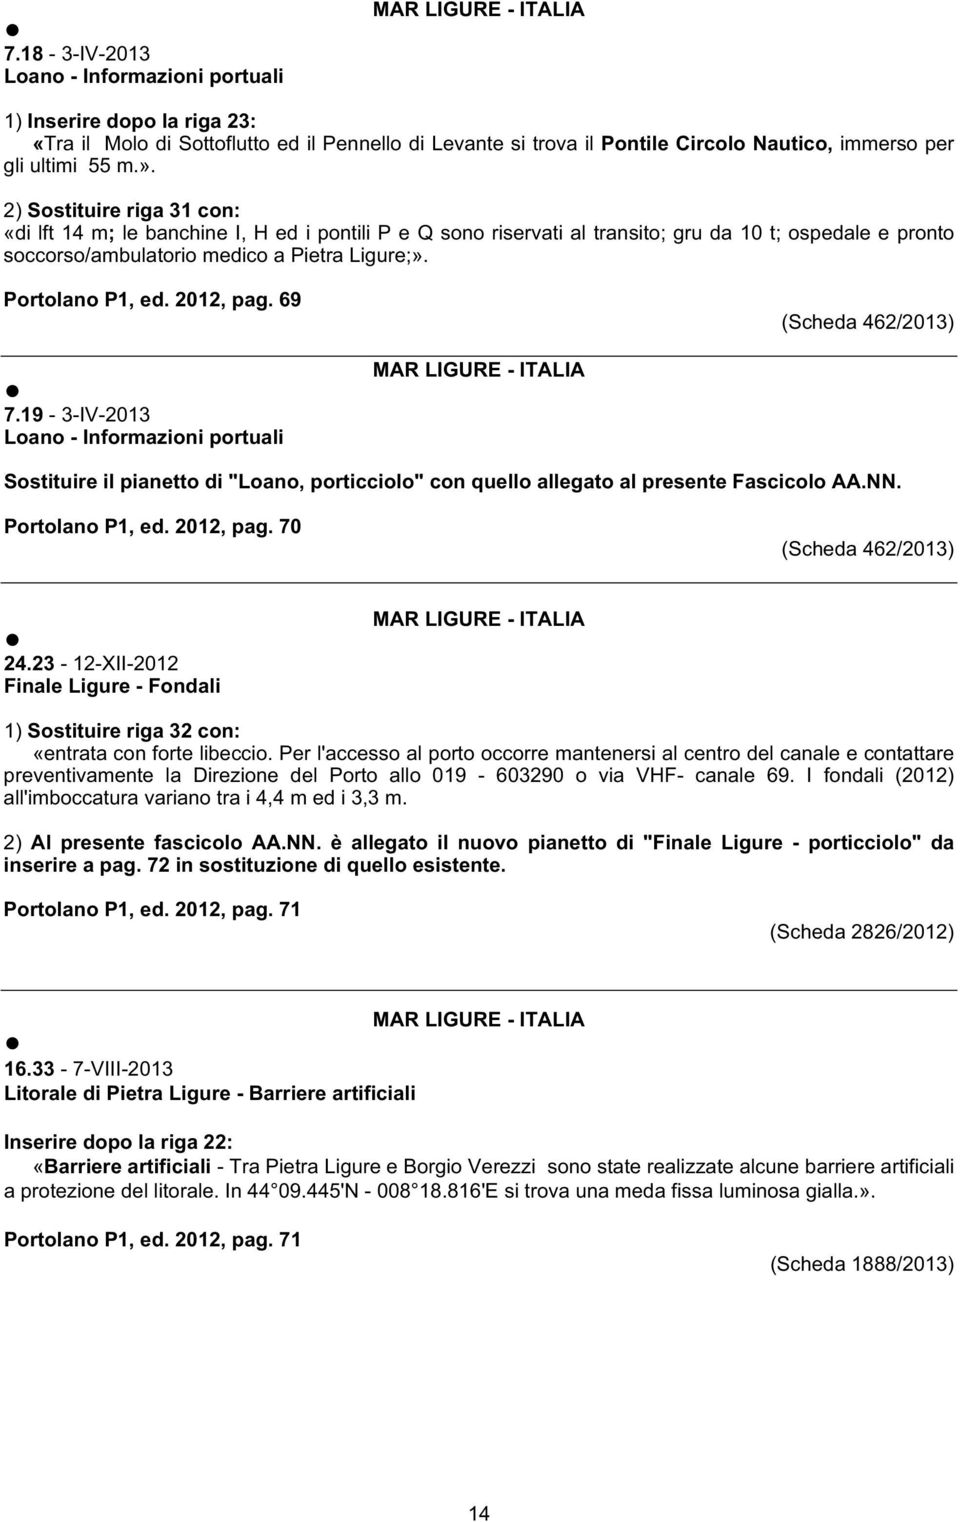 2012, pag. 69 (Scheda 462/2013) 7.19-3-IV-2013 Loano - Informazioni portuali Sostituire il pianetto di "Loano, porticciolo" con quello allegato al presente Fascicolo AA.NN. Portolano P1, ed.